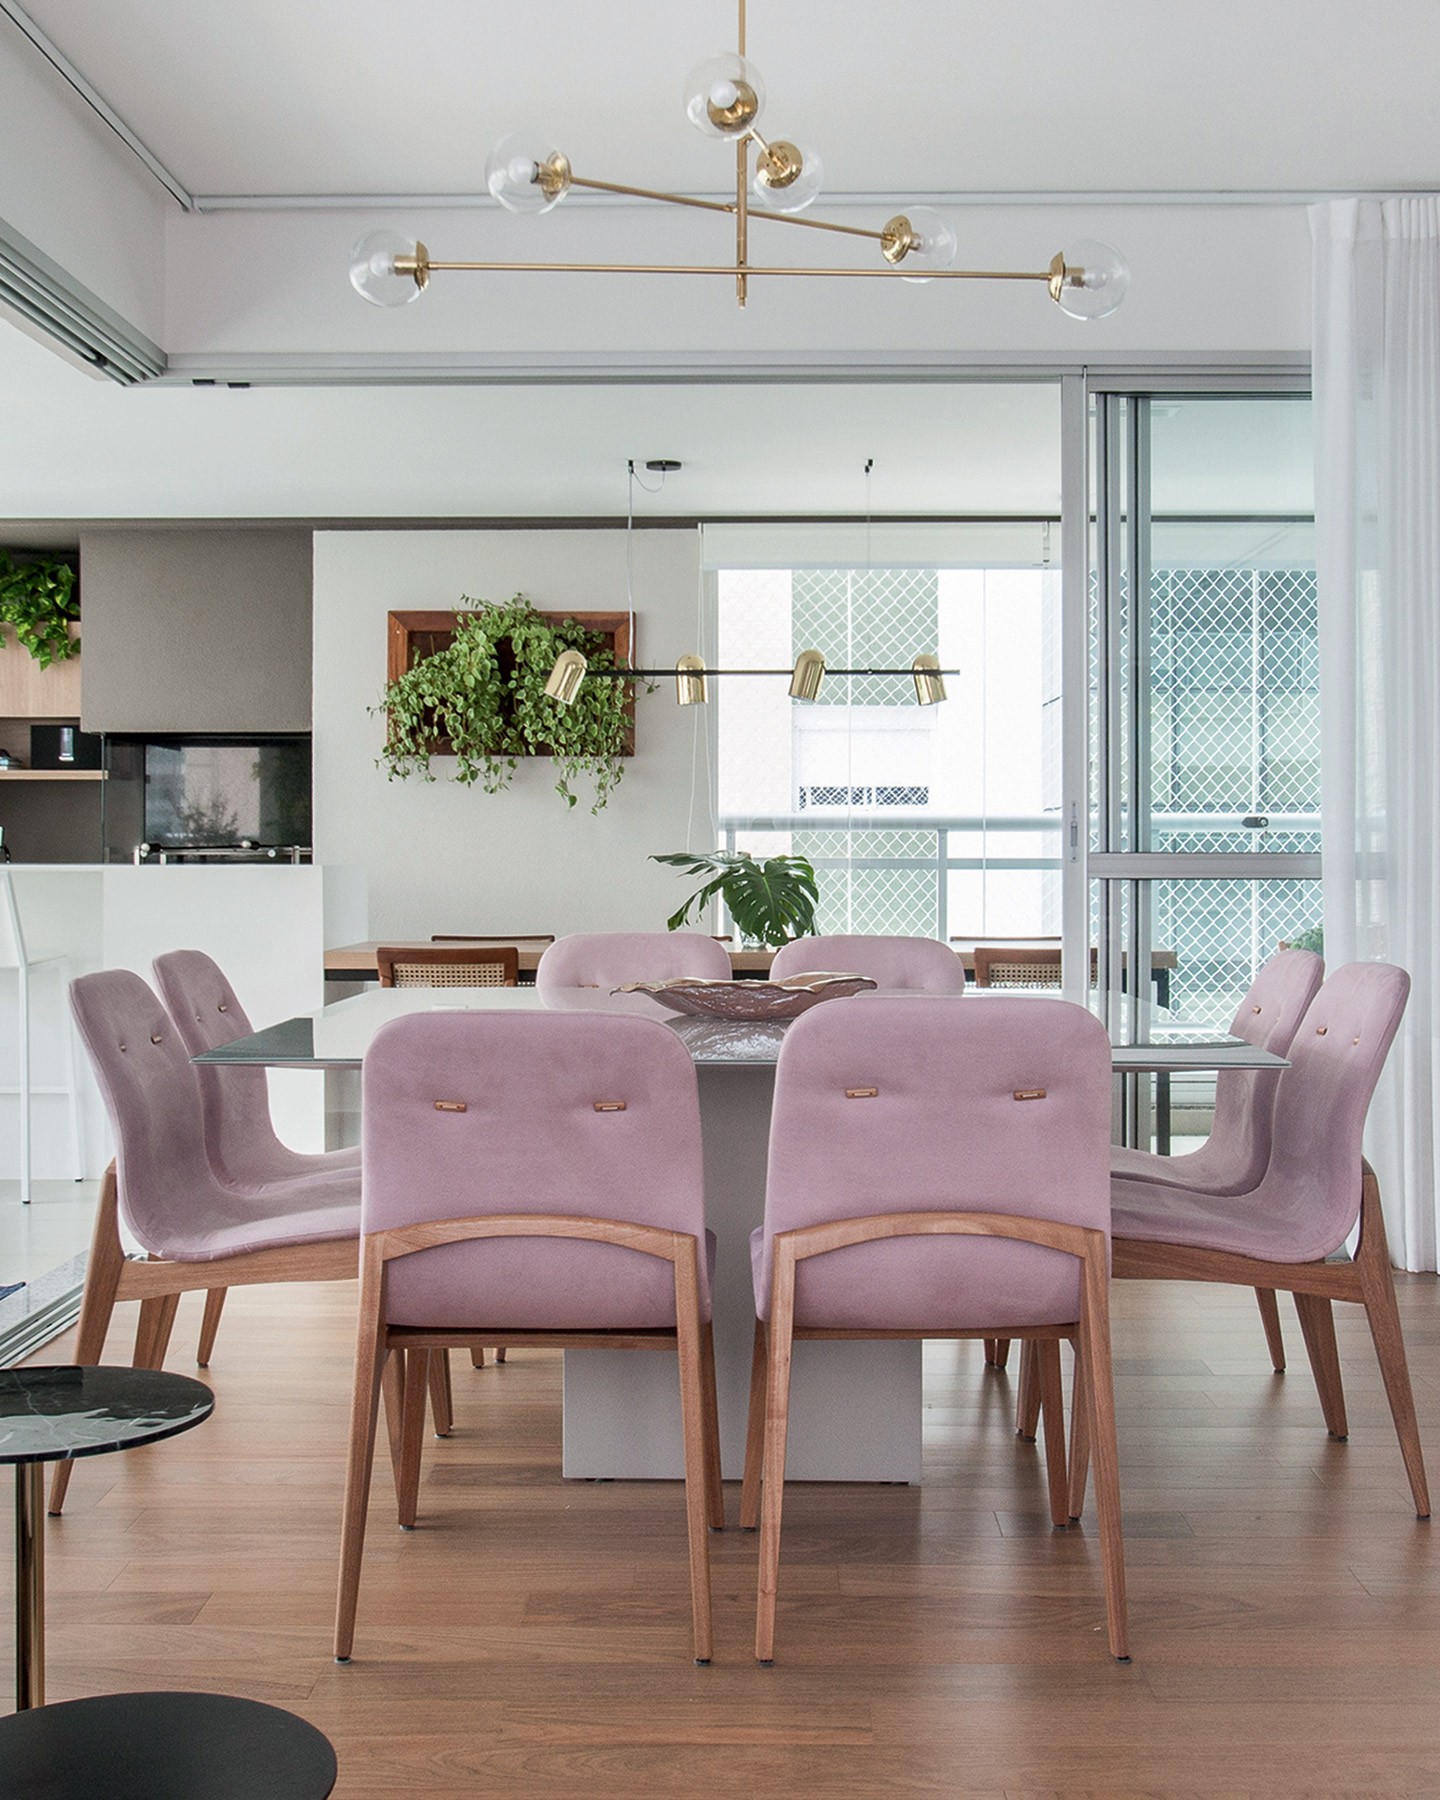 Apartamento de 220 m² ganha décor leve e móveis com linhas retas (Foto: Eder Bruscagin/divulgação)